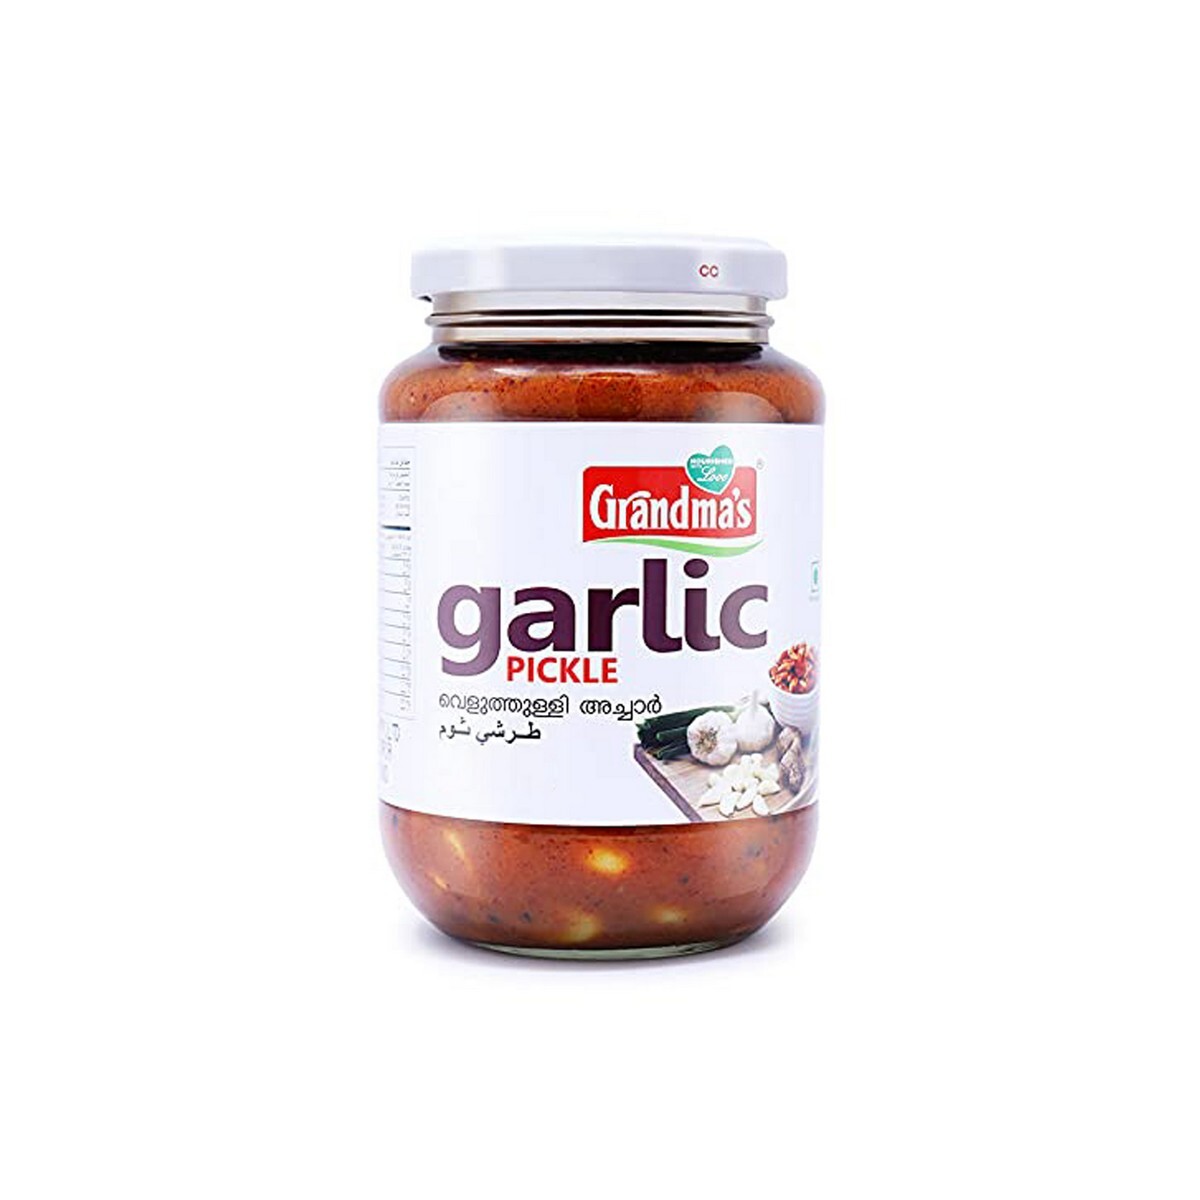 Grandmas Garlic Pickle 400gm